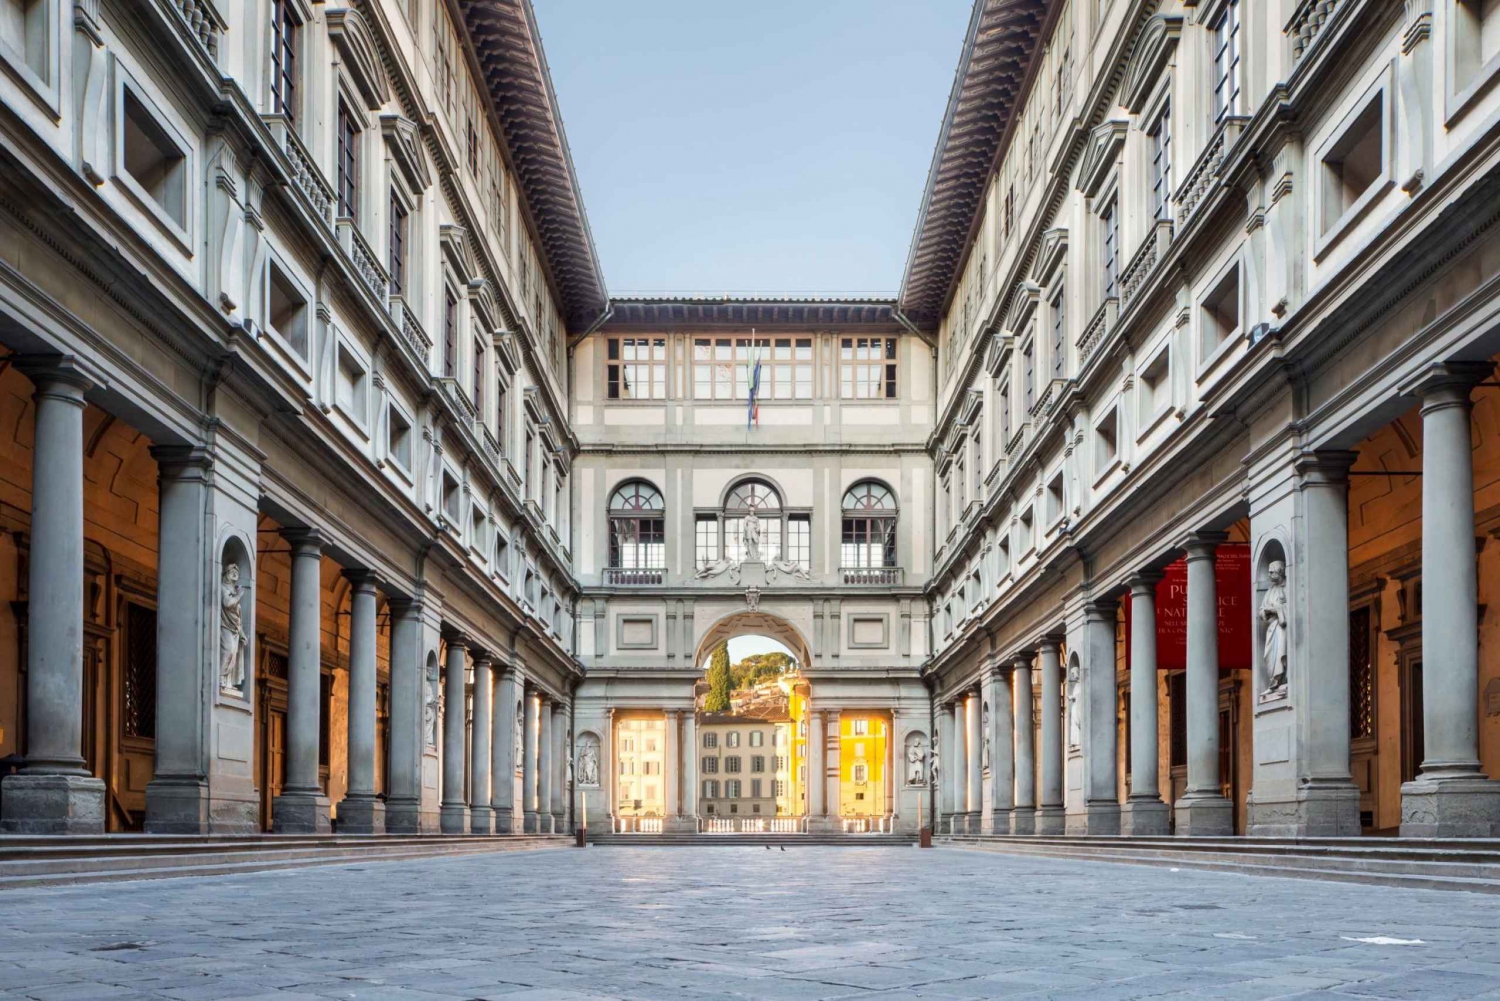 Rooma: Uffizin gallerian kierros: Opastettu kokopäiväretki Firenzeen ja Uffizin galleriaan